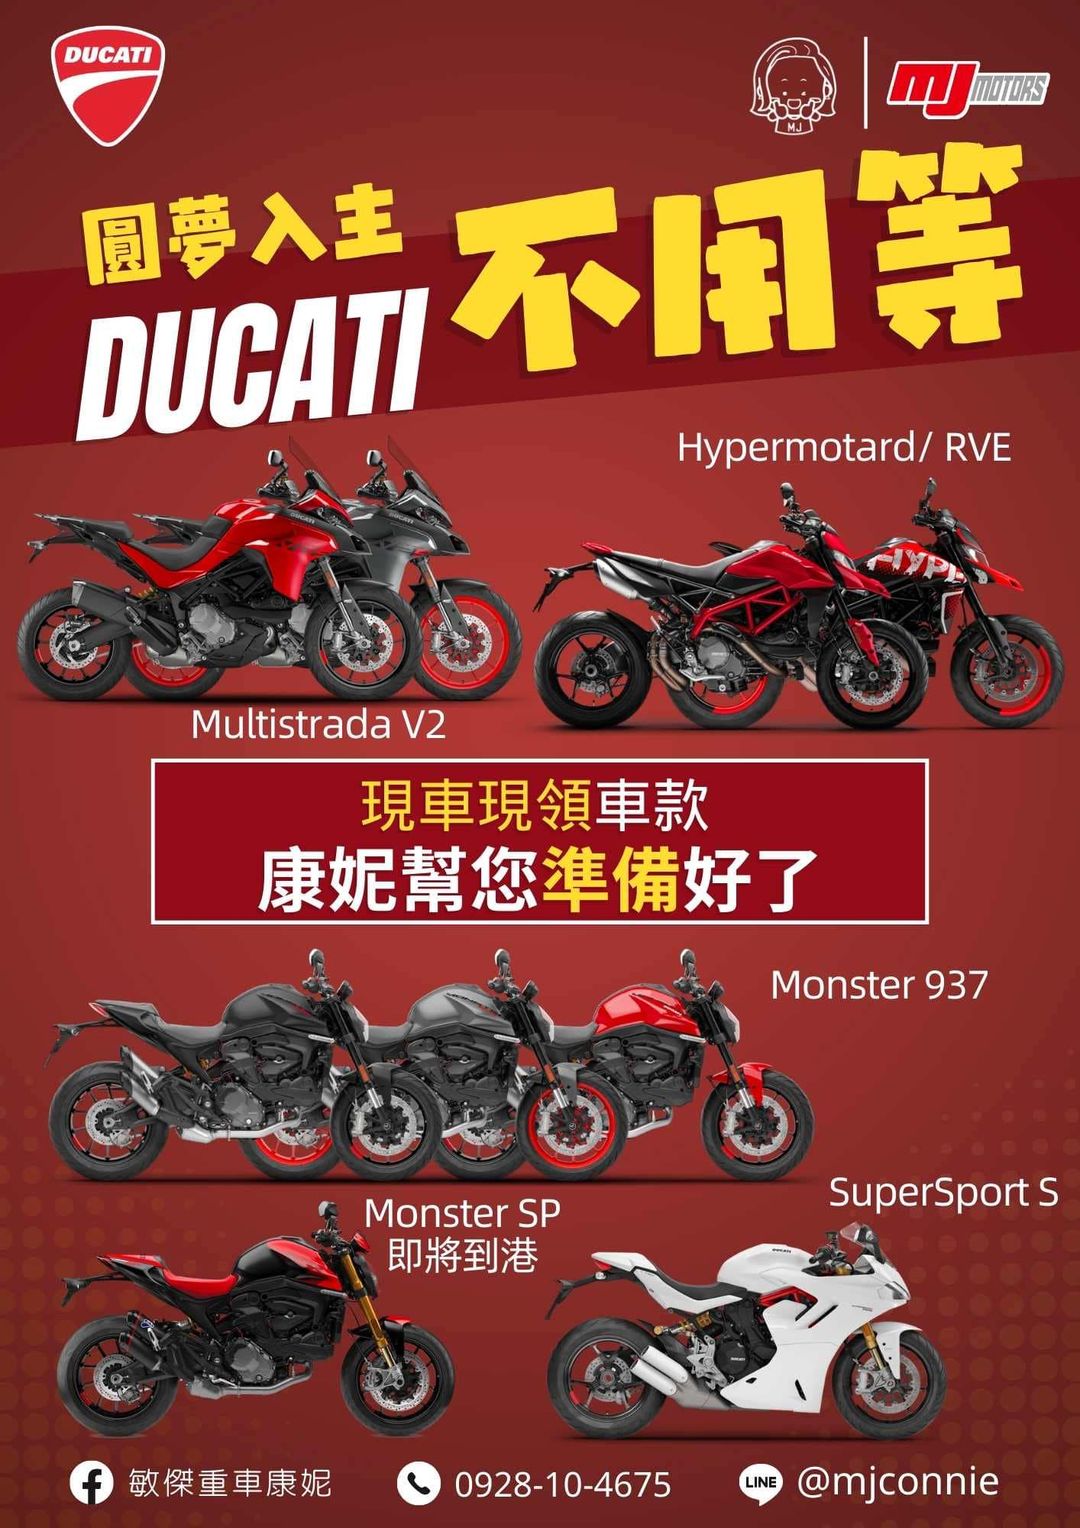 【敏傑車業資深銷售專員 康妮 Connie】DUCATI SuperSport S - 「Webike-摩托車市」 『敏傑康妮』買Ducati 免擔心 不用等待 康妮已準備好～幫您圓夢 康妮給您最佳方案 價格依實際為主